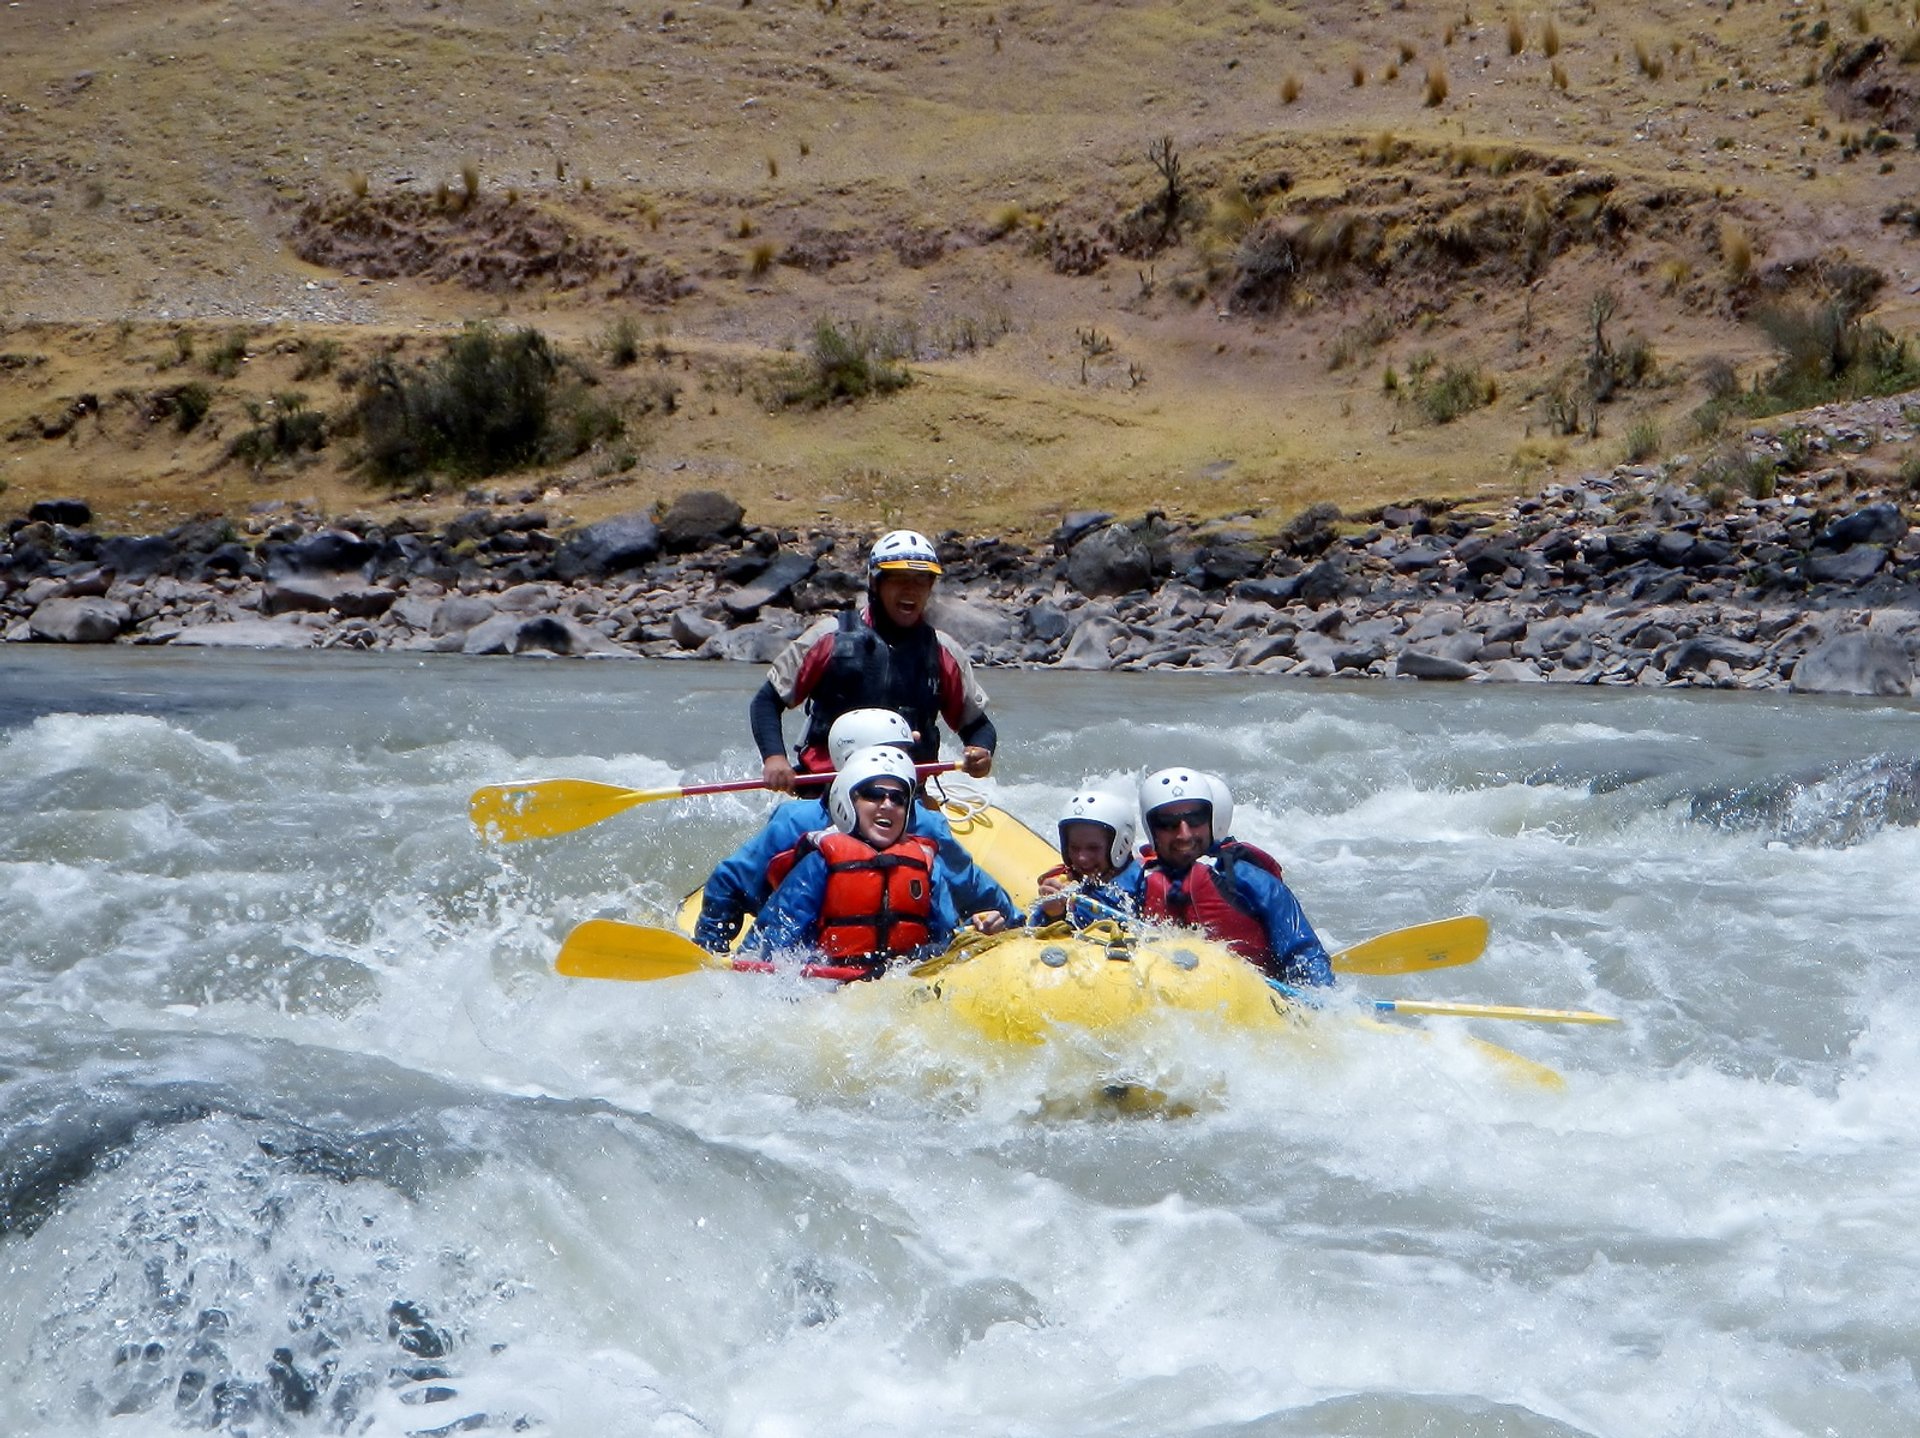 Rafting the Urubamba River